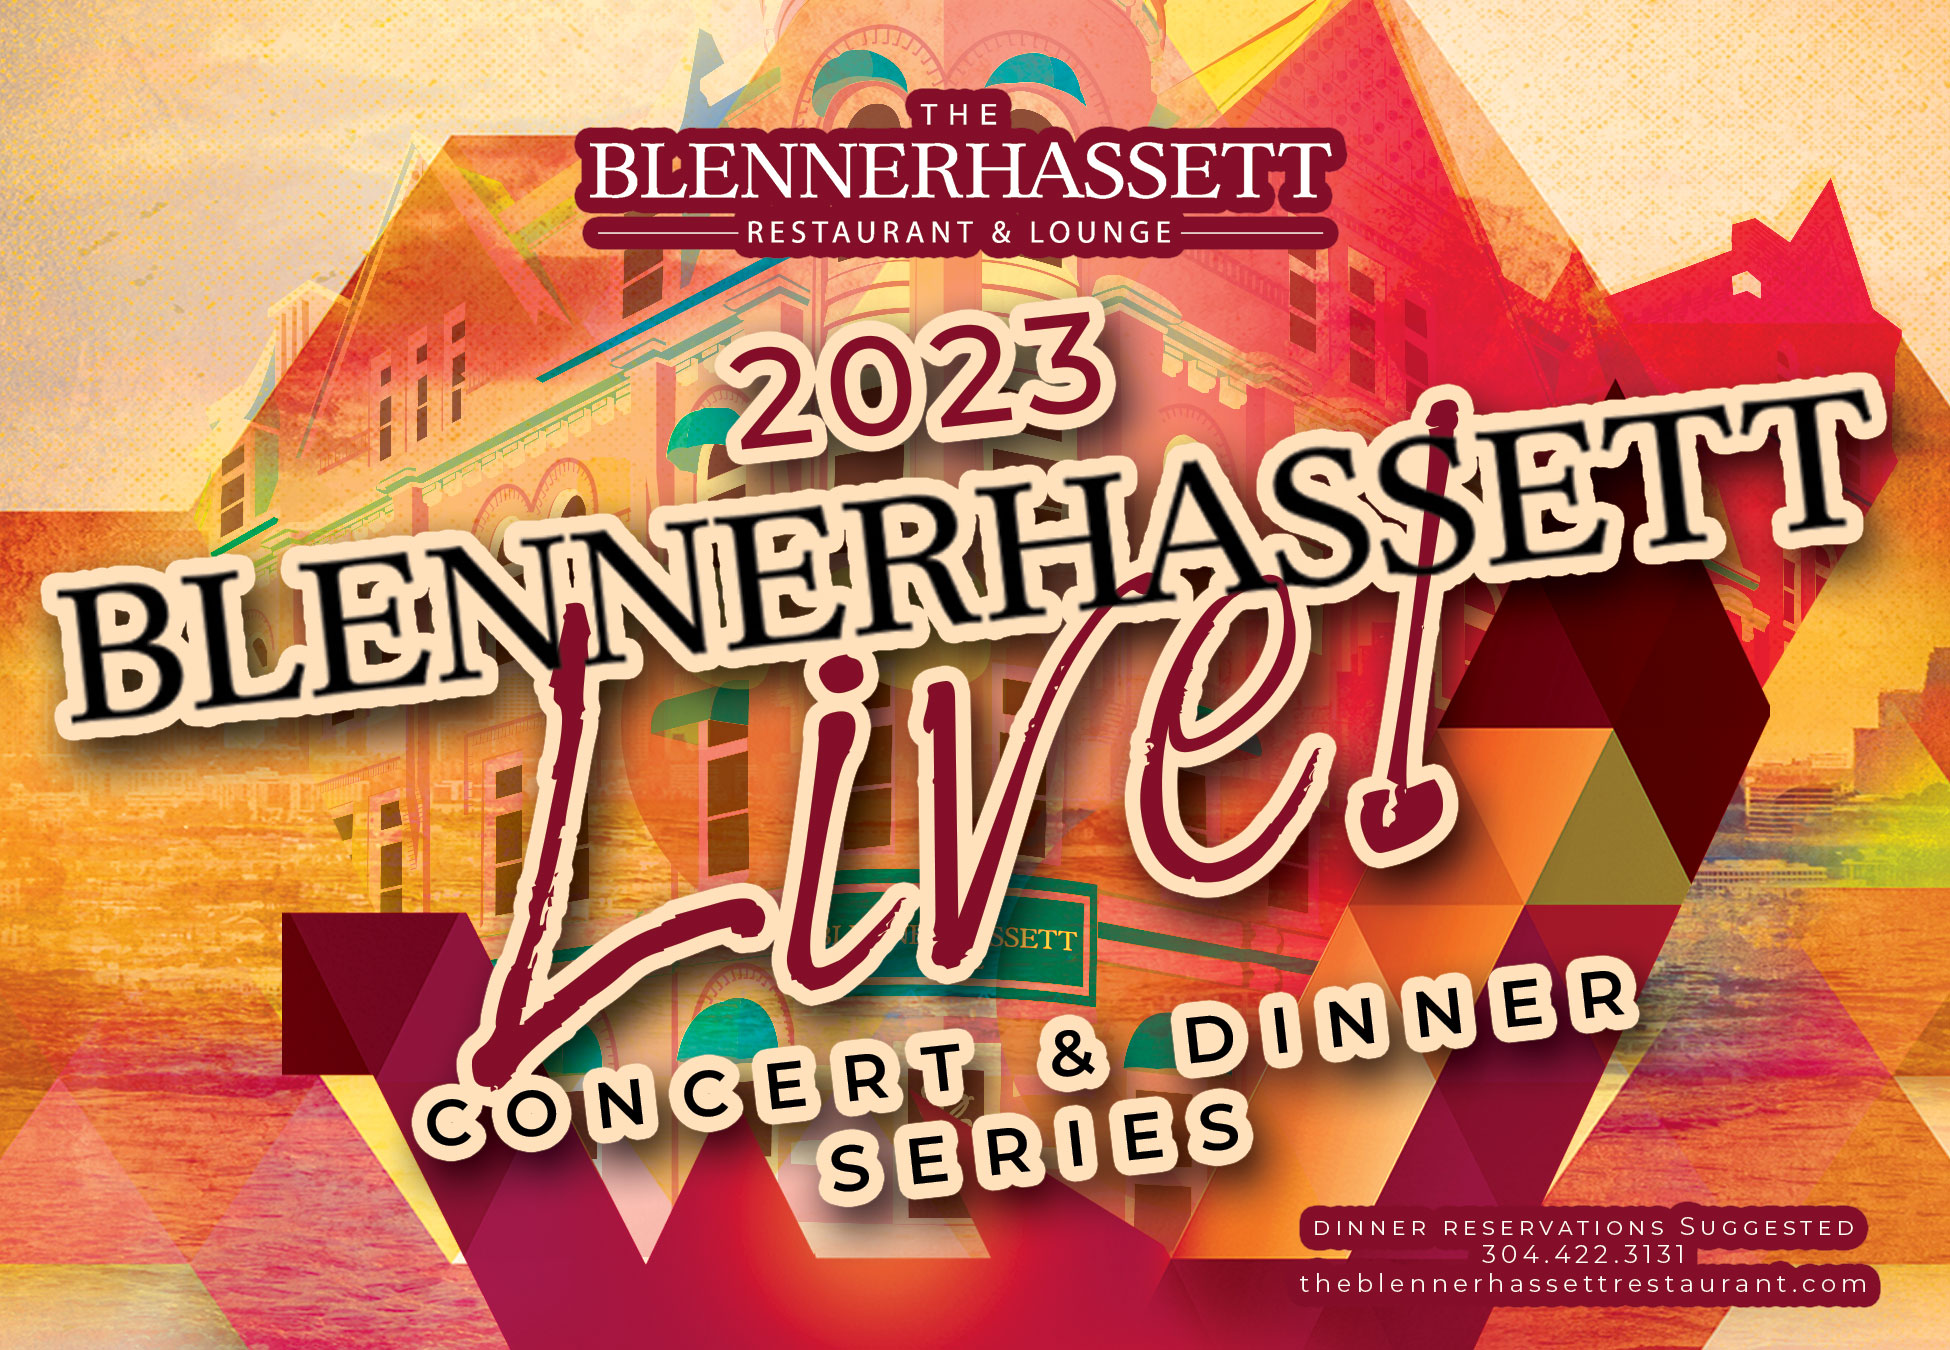 Blennerhassett Live! Concert and Dinner Series